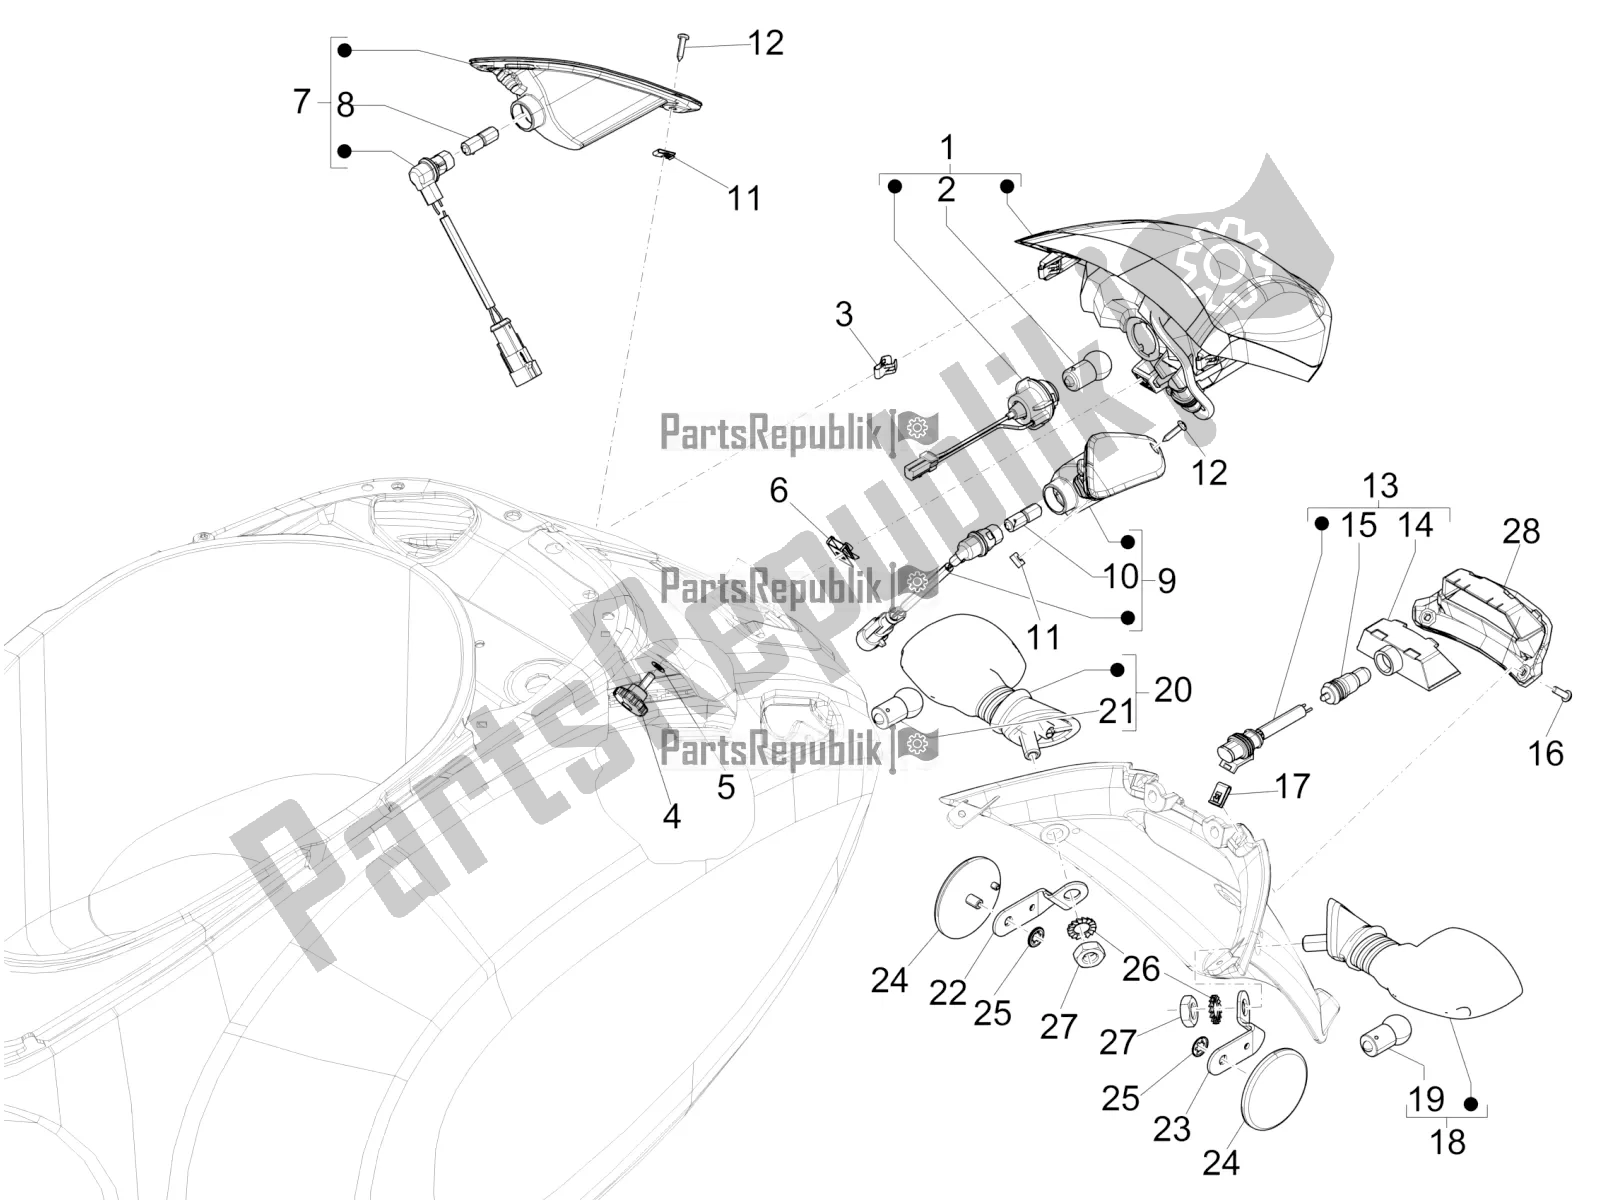 Tutte le parti per il Fanali Posteriori - Indicatori Di Direzione del Vespa Elettrica Motociclo 70 KM/H USA 2021